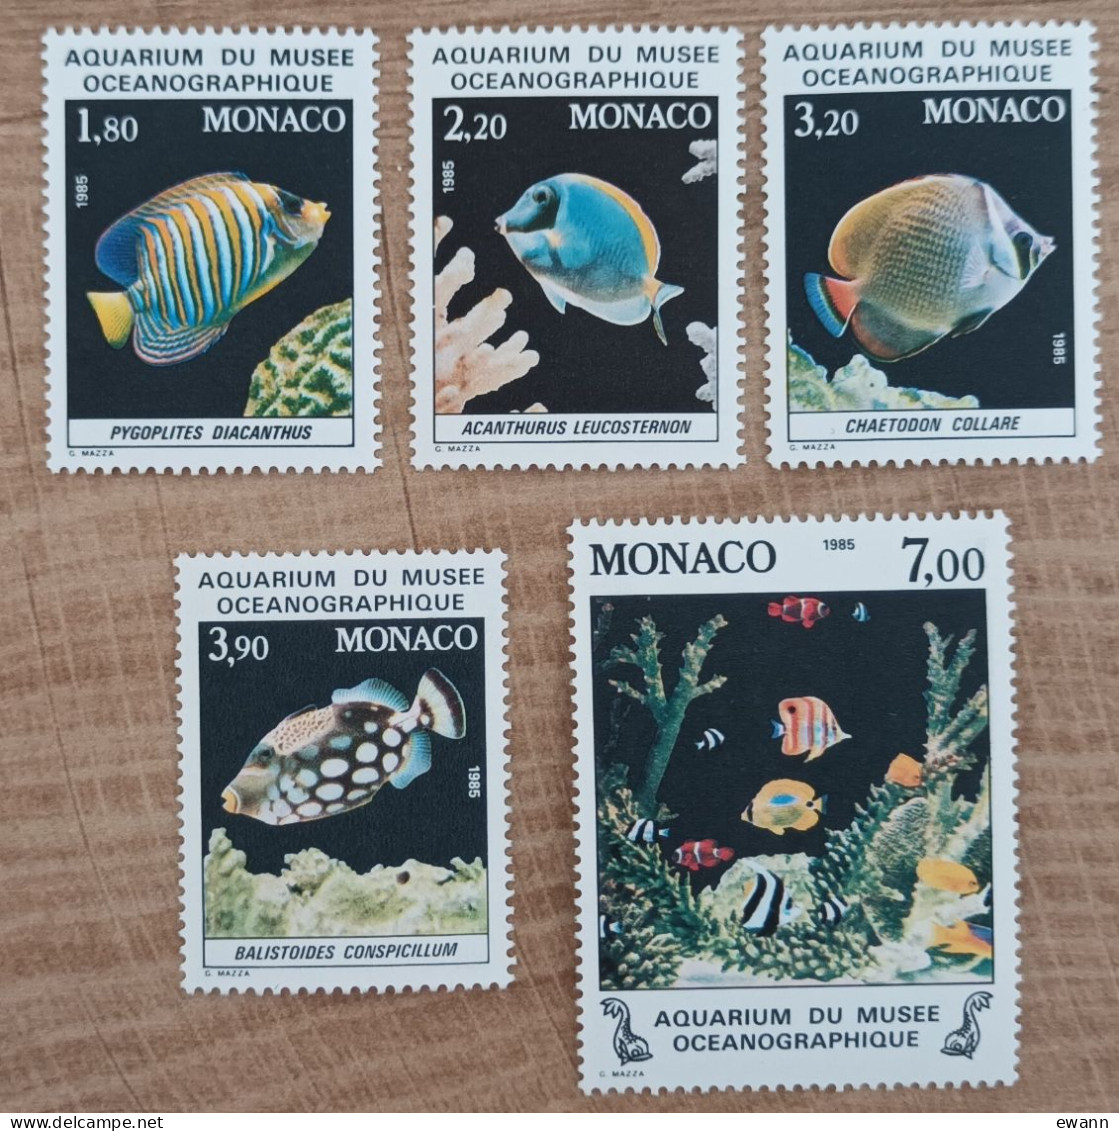 Monaco - YT N°1483 à 1487 - Faune / Poissons Du Musée Océanographique De Monaco - 1985 - Neuf - Unused Stamps